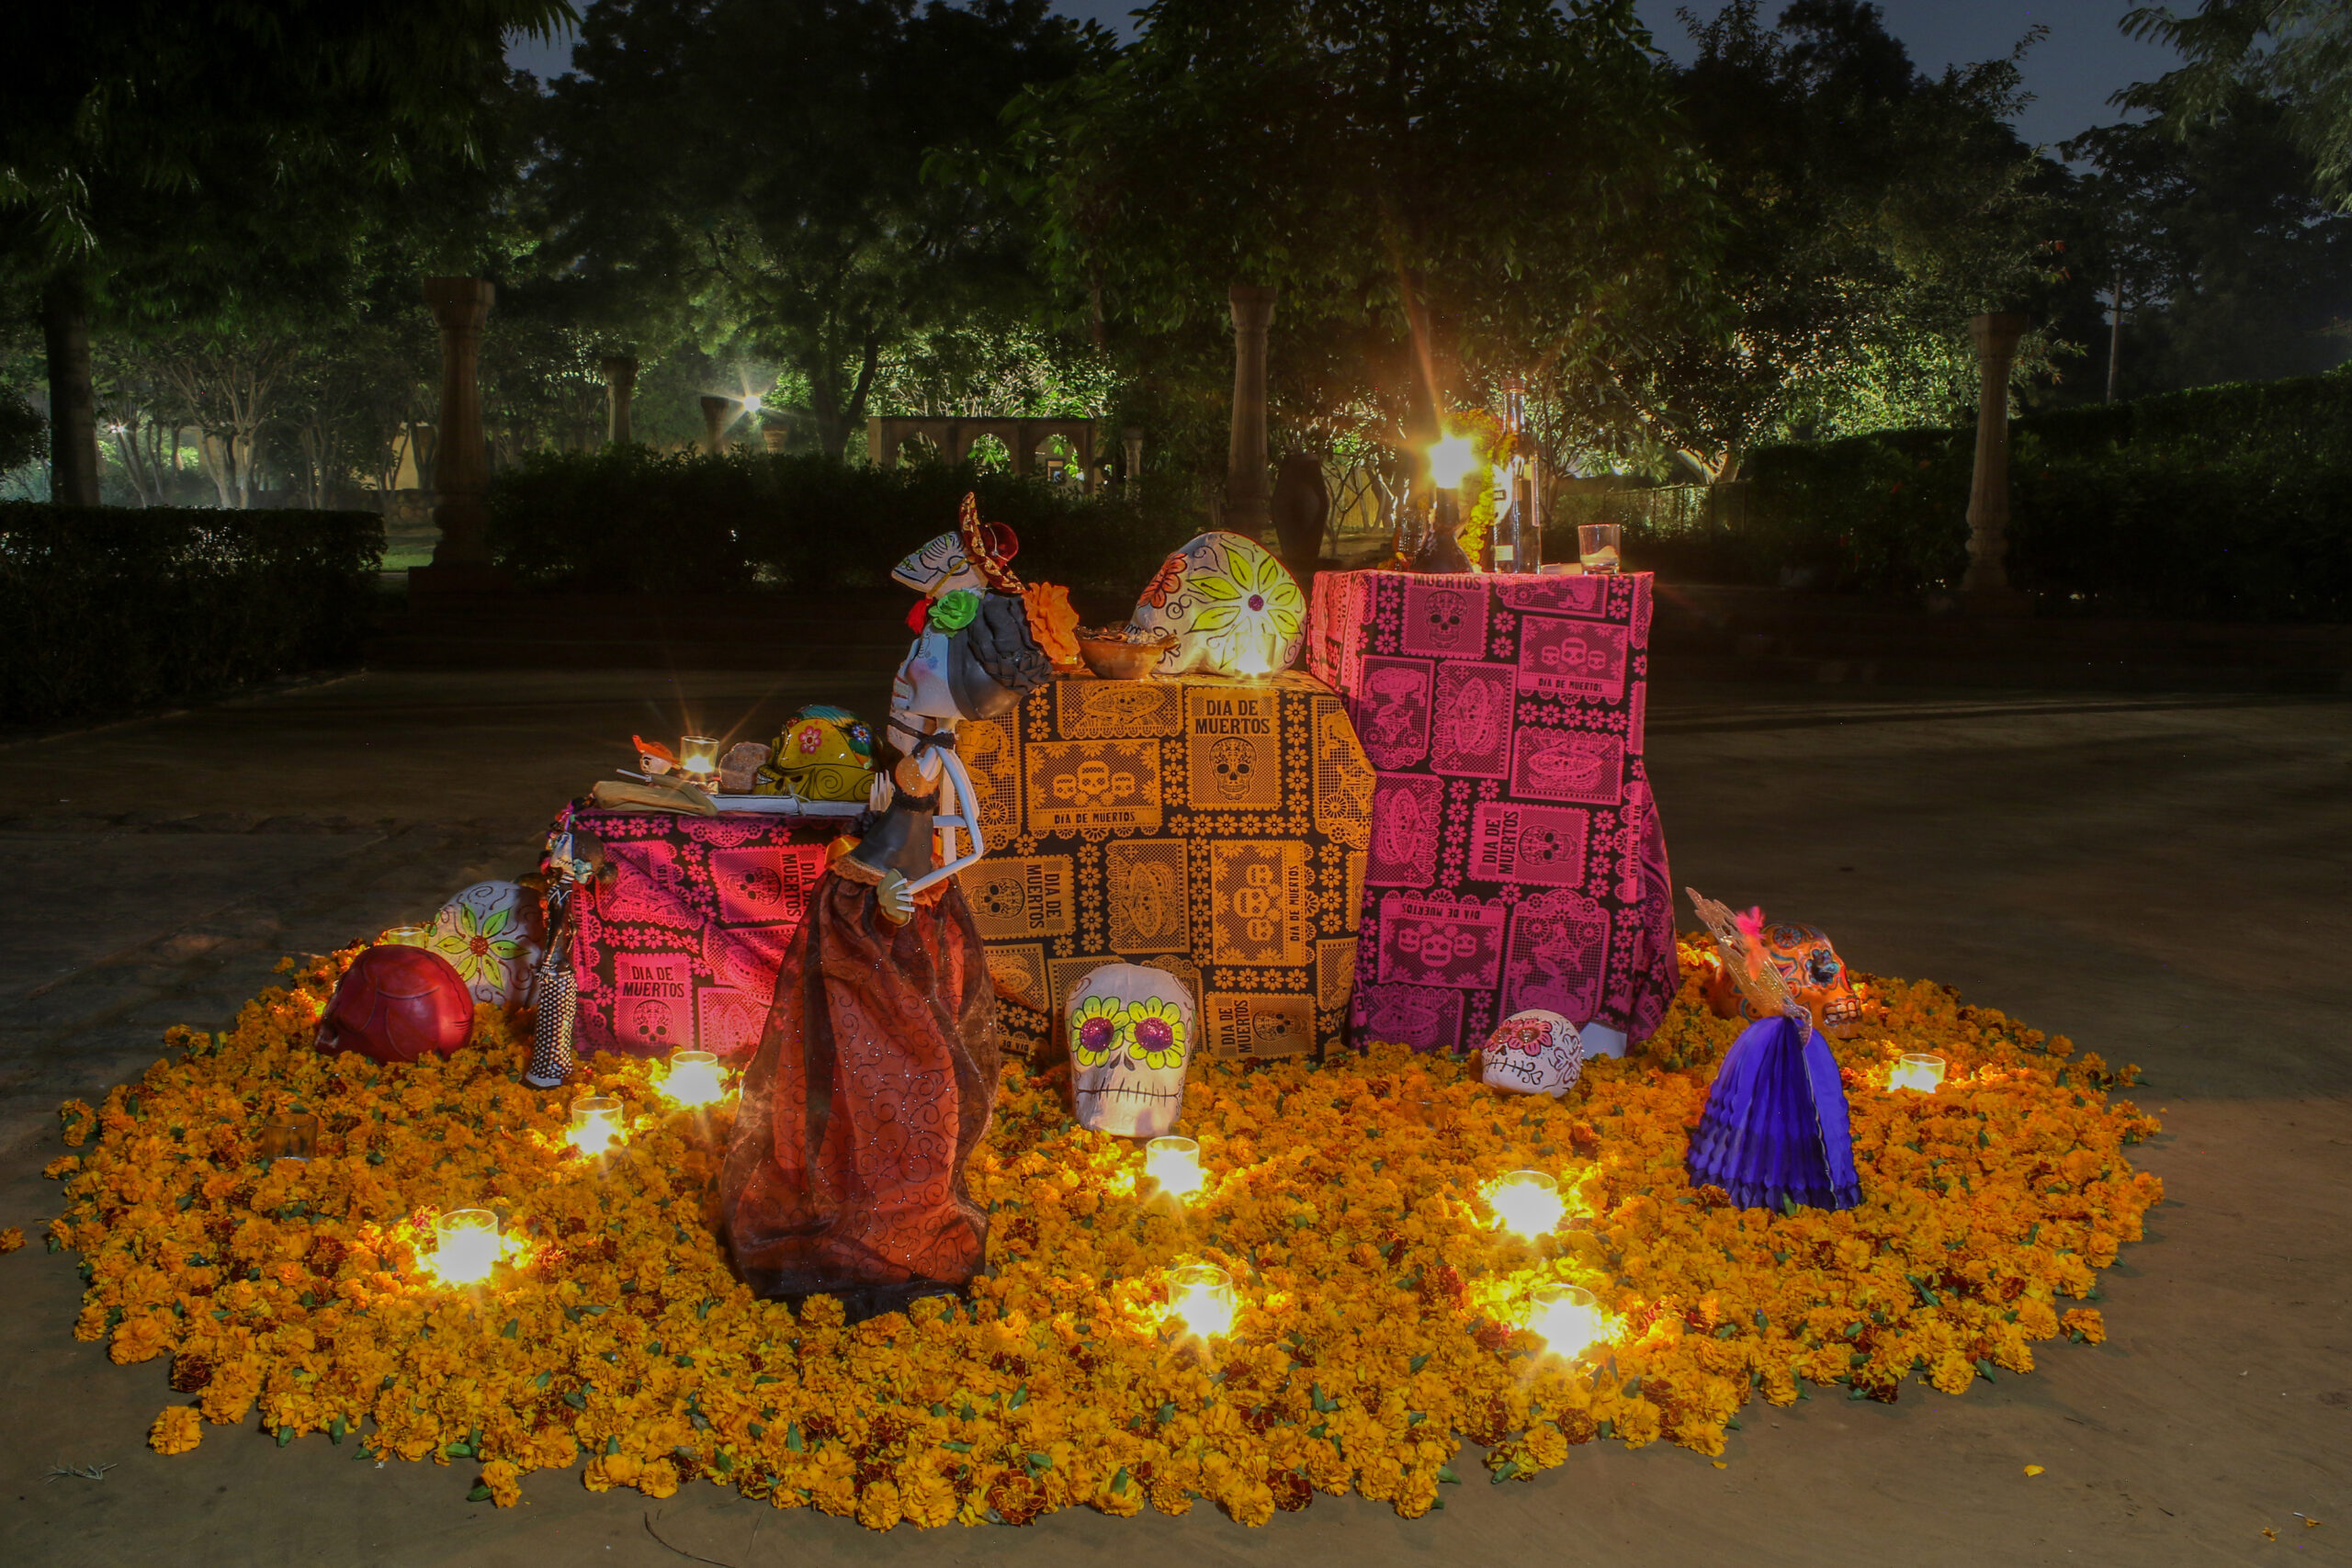 Celebrating Día de Muertos the Mexican way in India